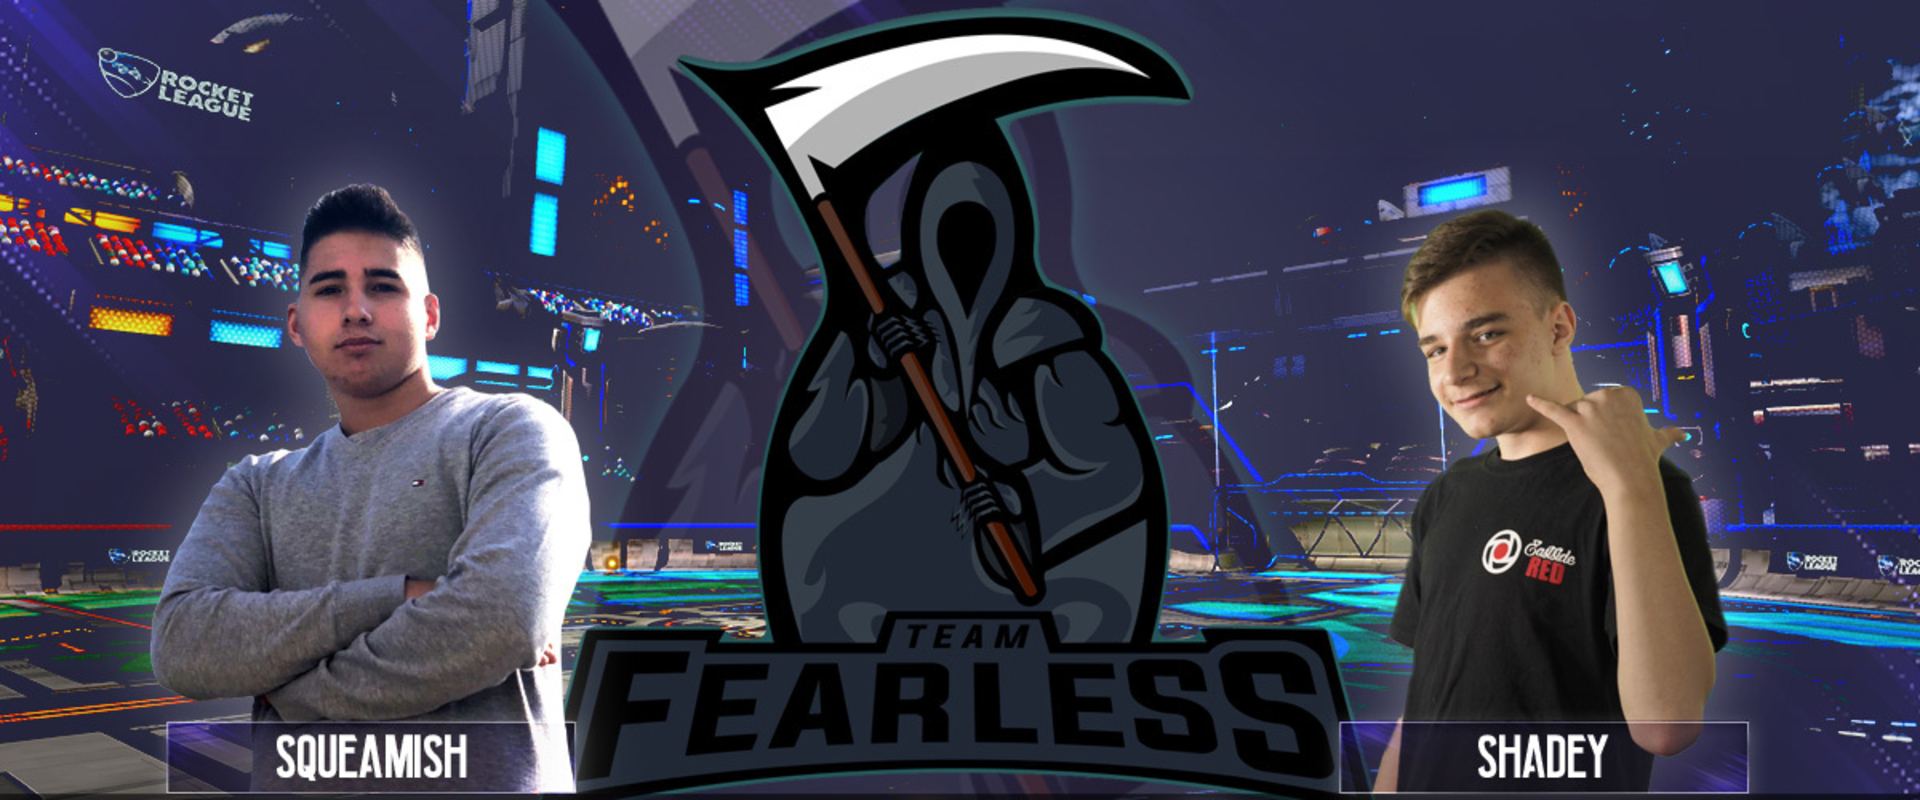 A Team Fearless játékosai nevükhöz hűen nem félnek senkitől - interjú